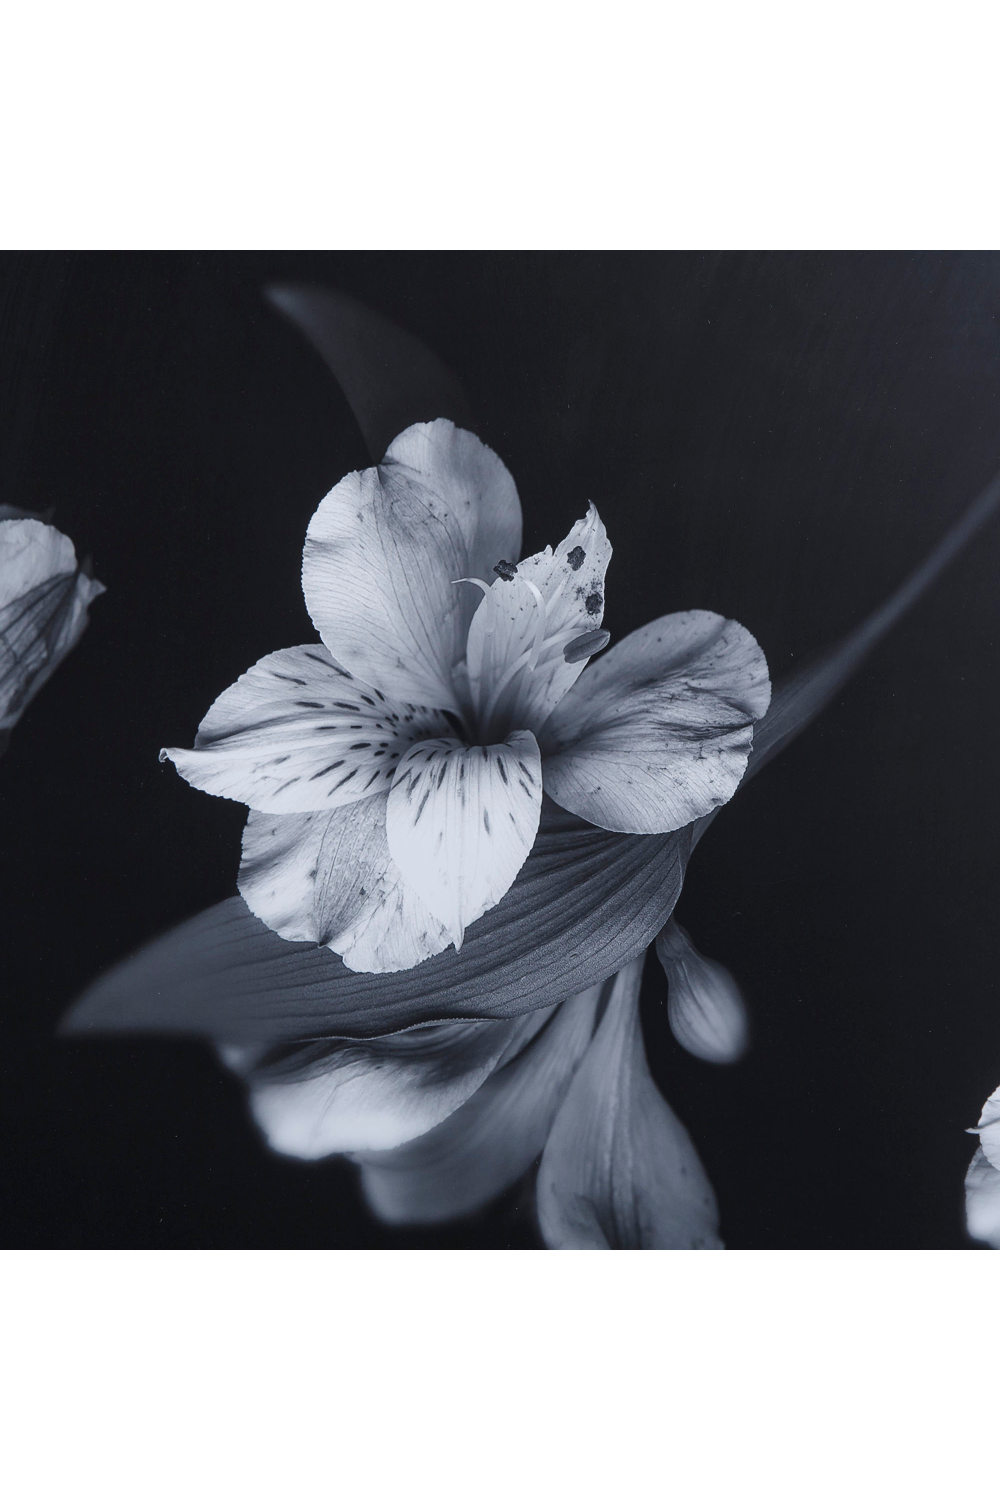 Contemporary Flower Photographic Artwork | Andrew Martin | Oroa.com